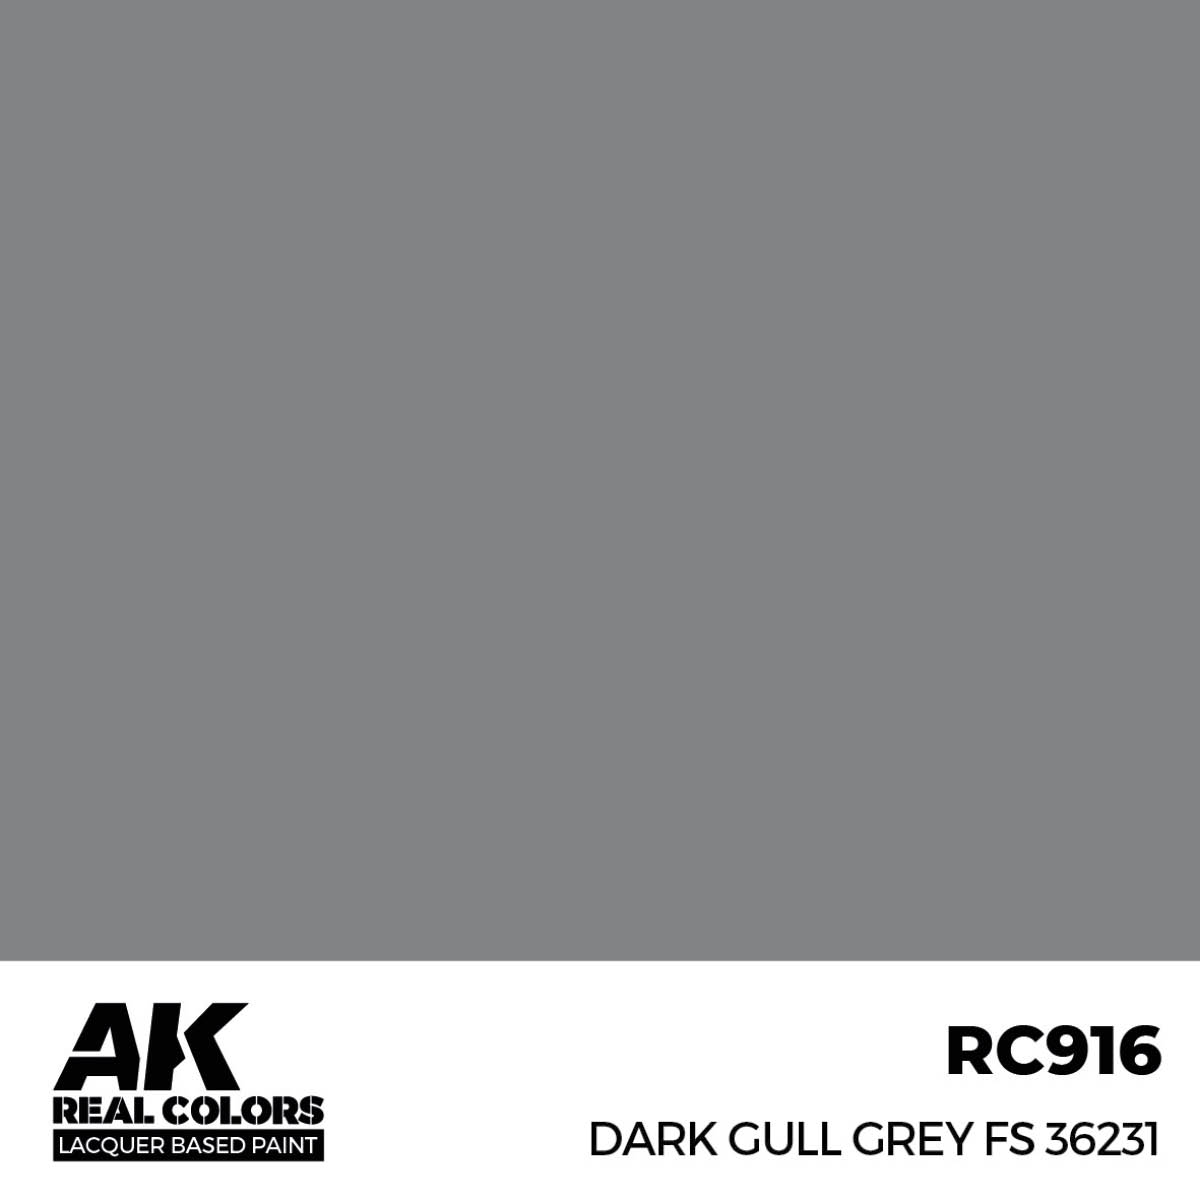 Dark Gull Grey FS 36231